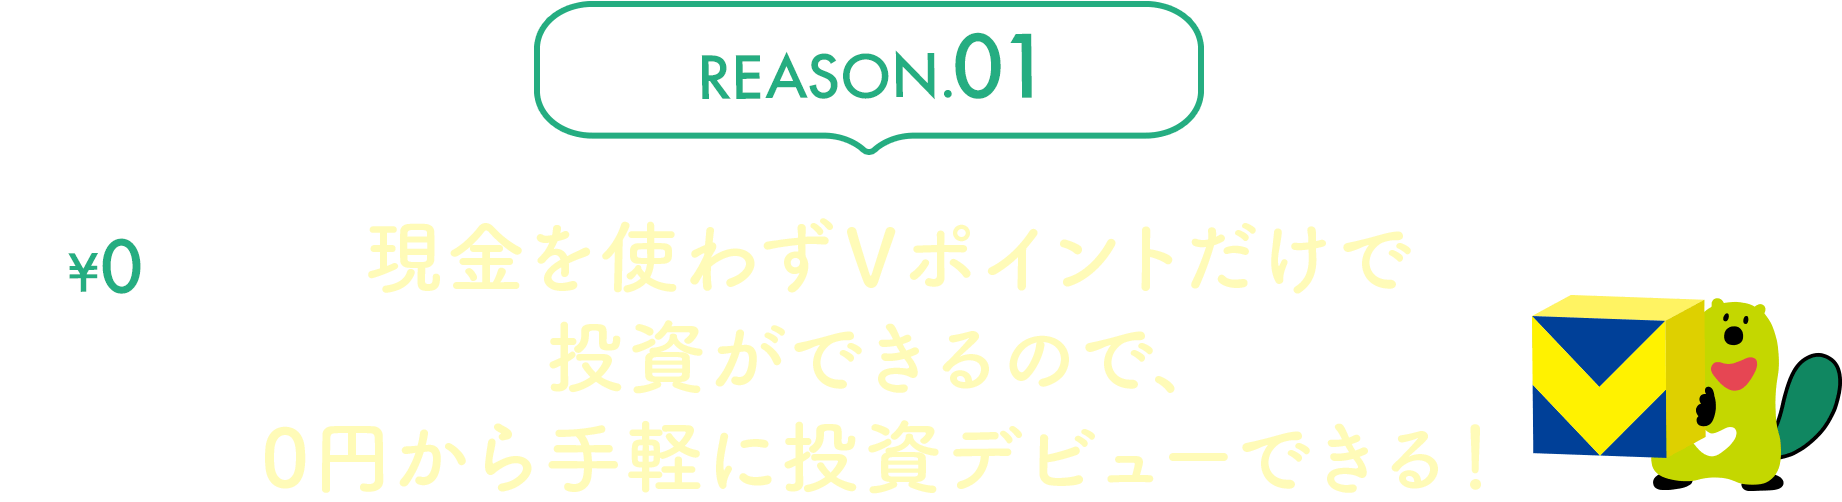 REASON.01 現金を使わずVポイントだけで投資ができるので、0円から手軽に投資デビューできる！